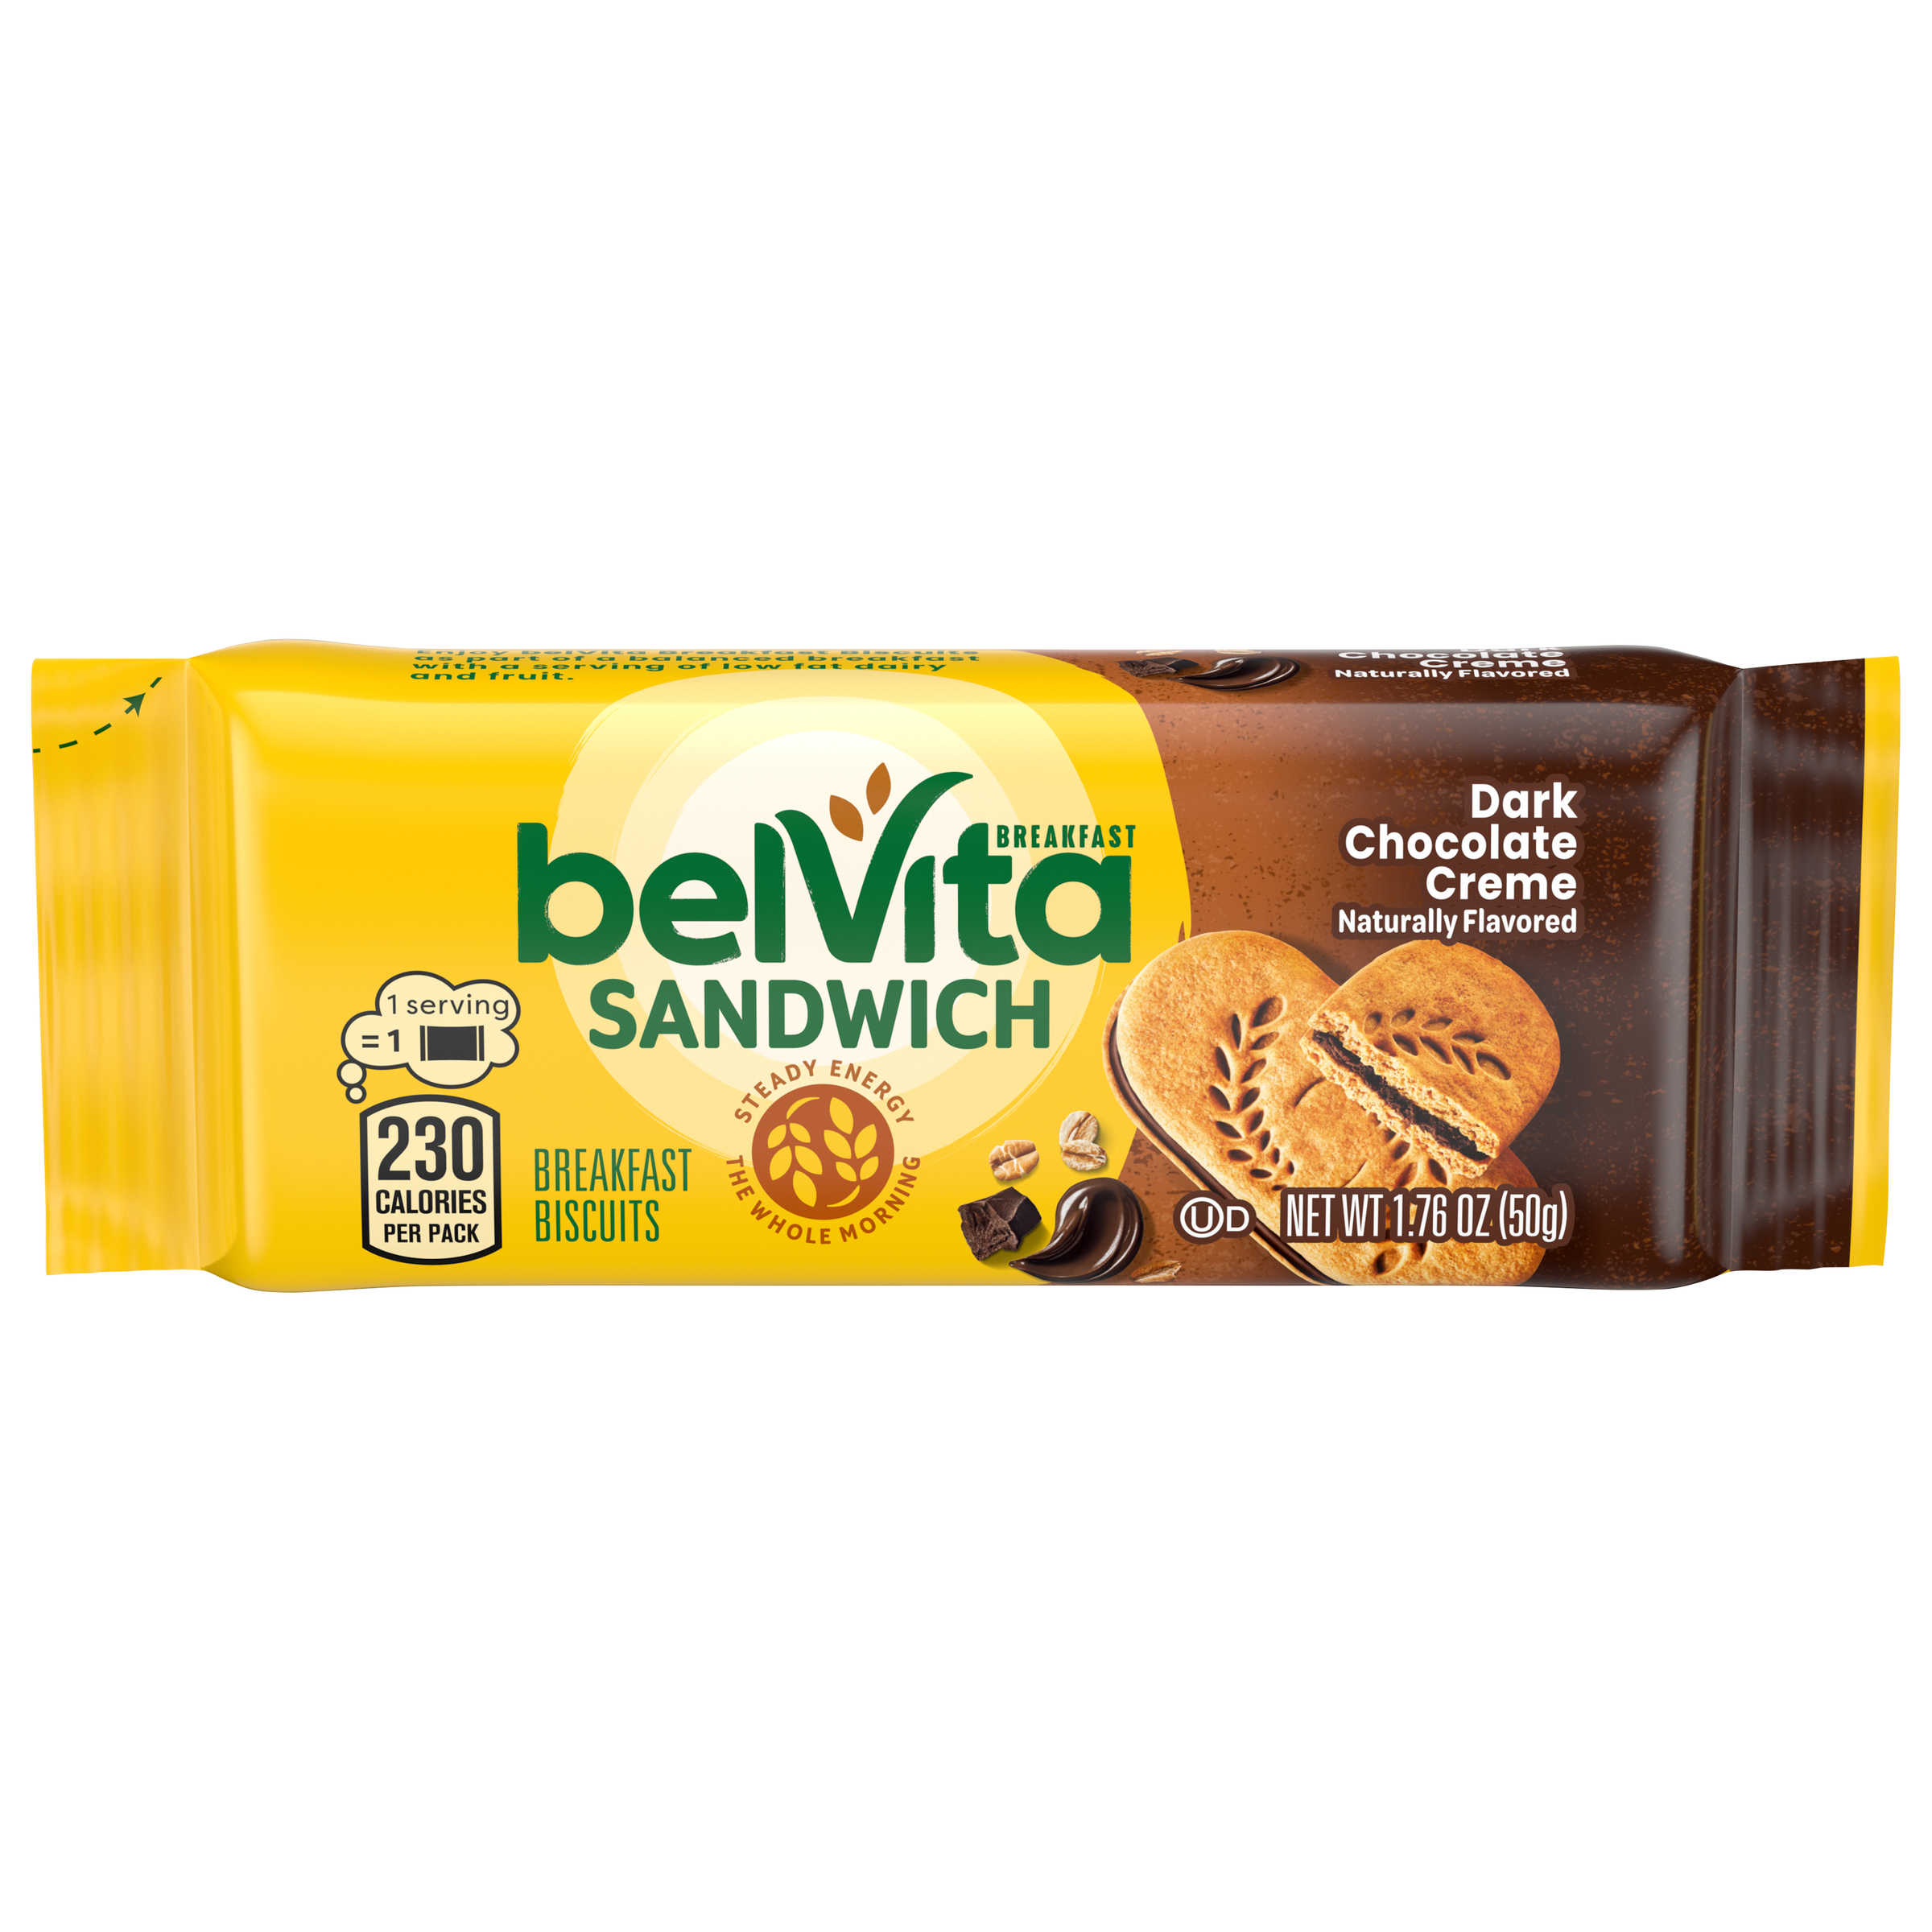 BELVITA Sandwich Breakfast Sandwich Dark Chocolate Creme Breakfast Biscuits 14.08 OZ-1